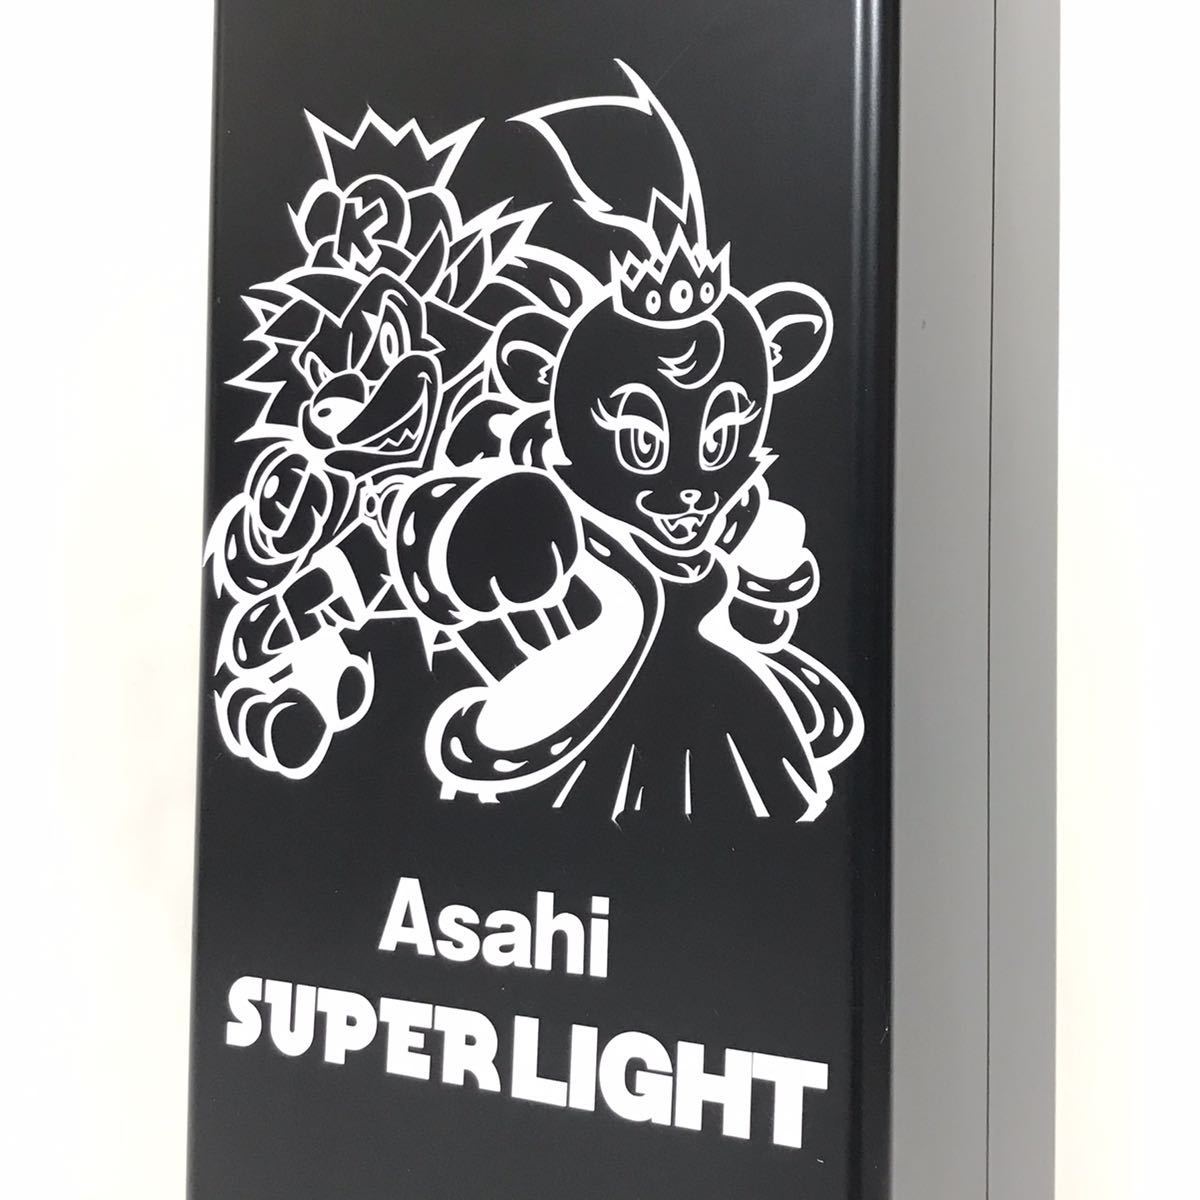 Asahi SUPER LIGHT アサヒ スーパーライト 灰皿 スモーク スタンド パチンコ スロット パチスロ 放出品 煙草 喫煙所 吸殻入れ 屋外 屋内_画像2